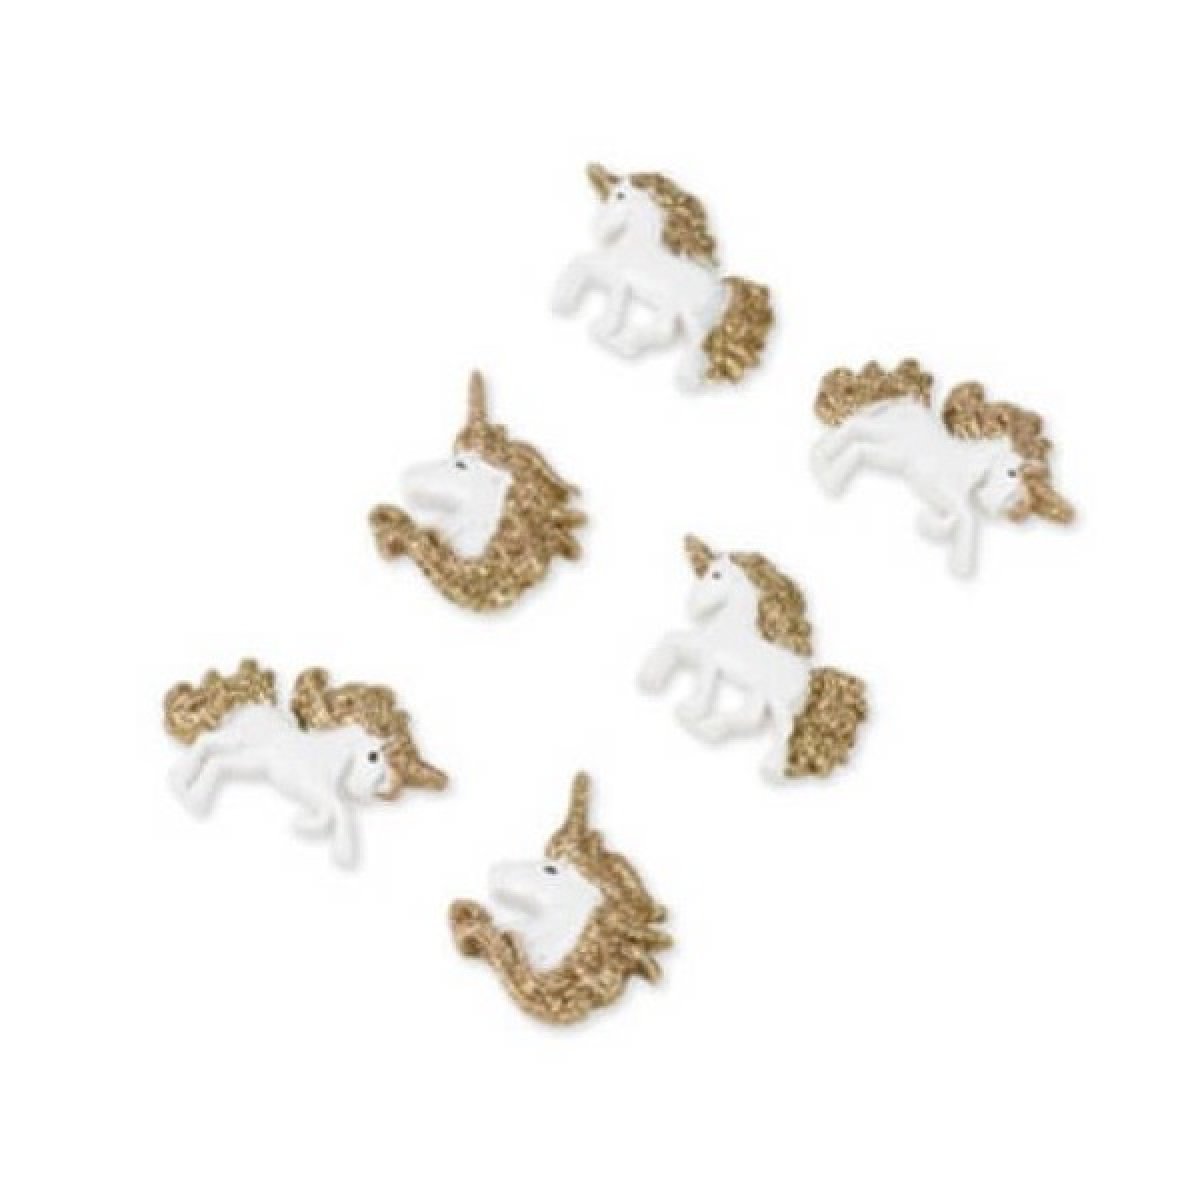 Licornes blanches en résine adhésives et paillettes dorées x 6 pièces